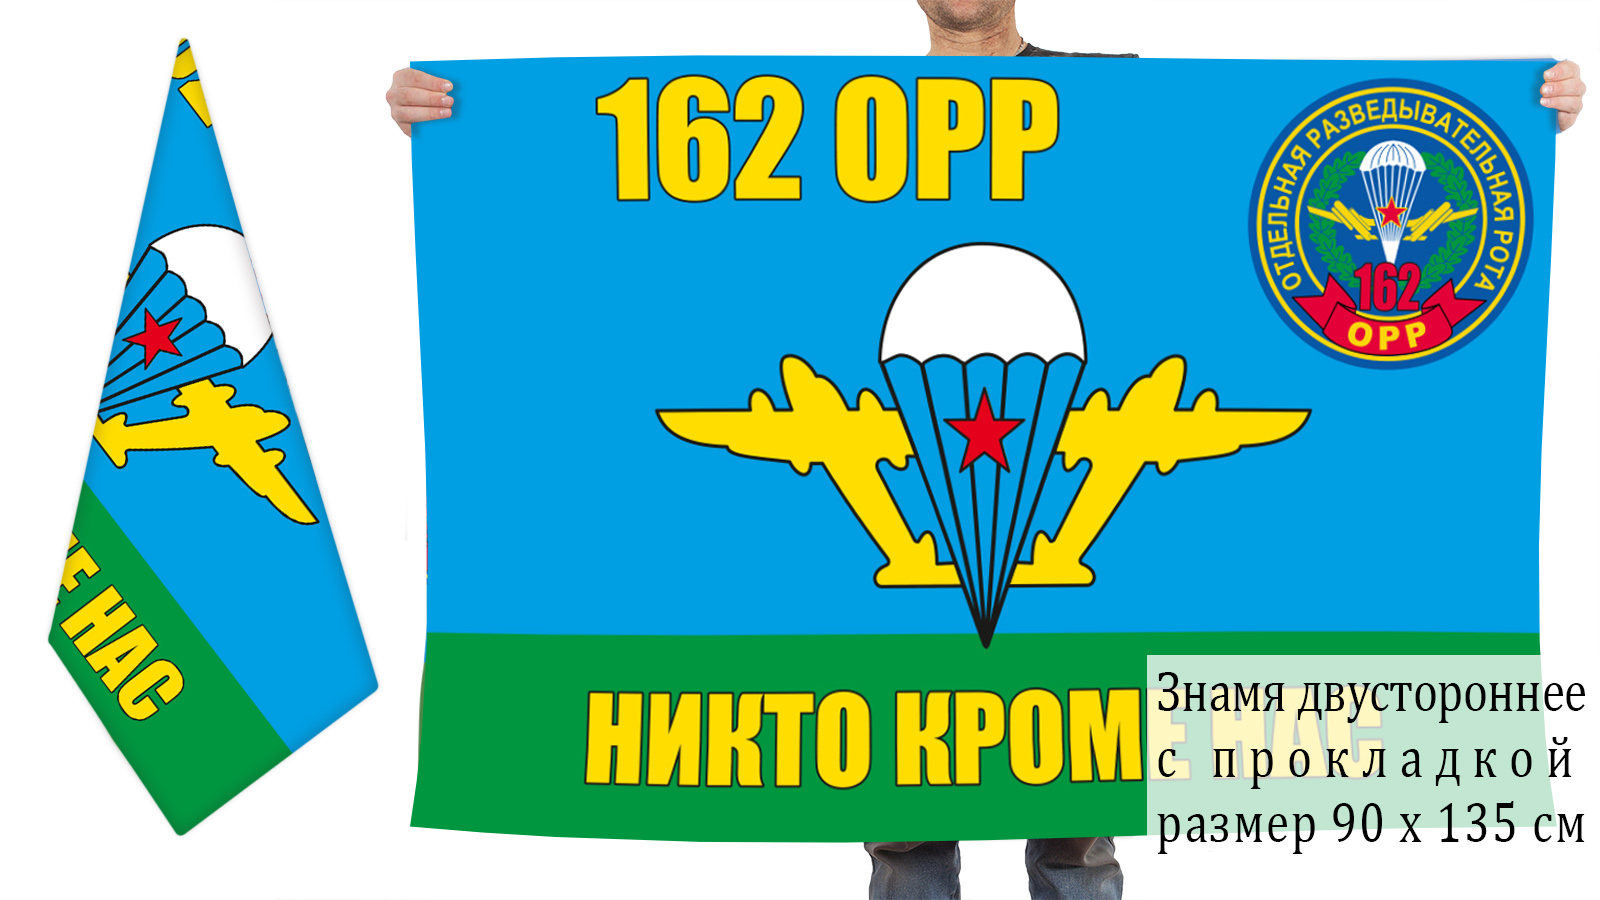 Двусторонний флаг 162 отдельной разведроты ВДВ